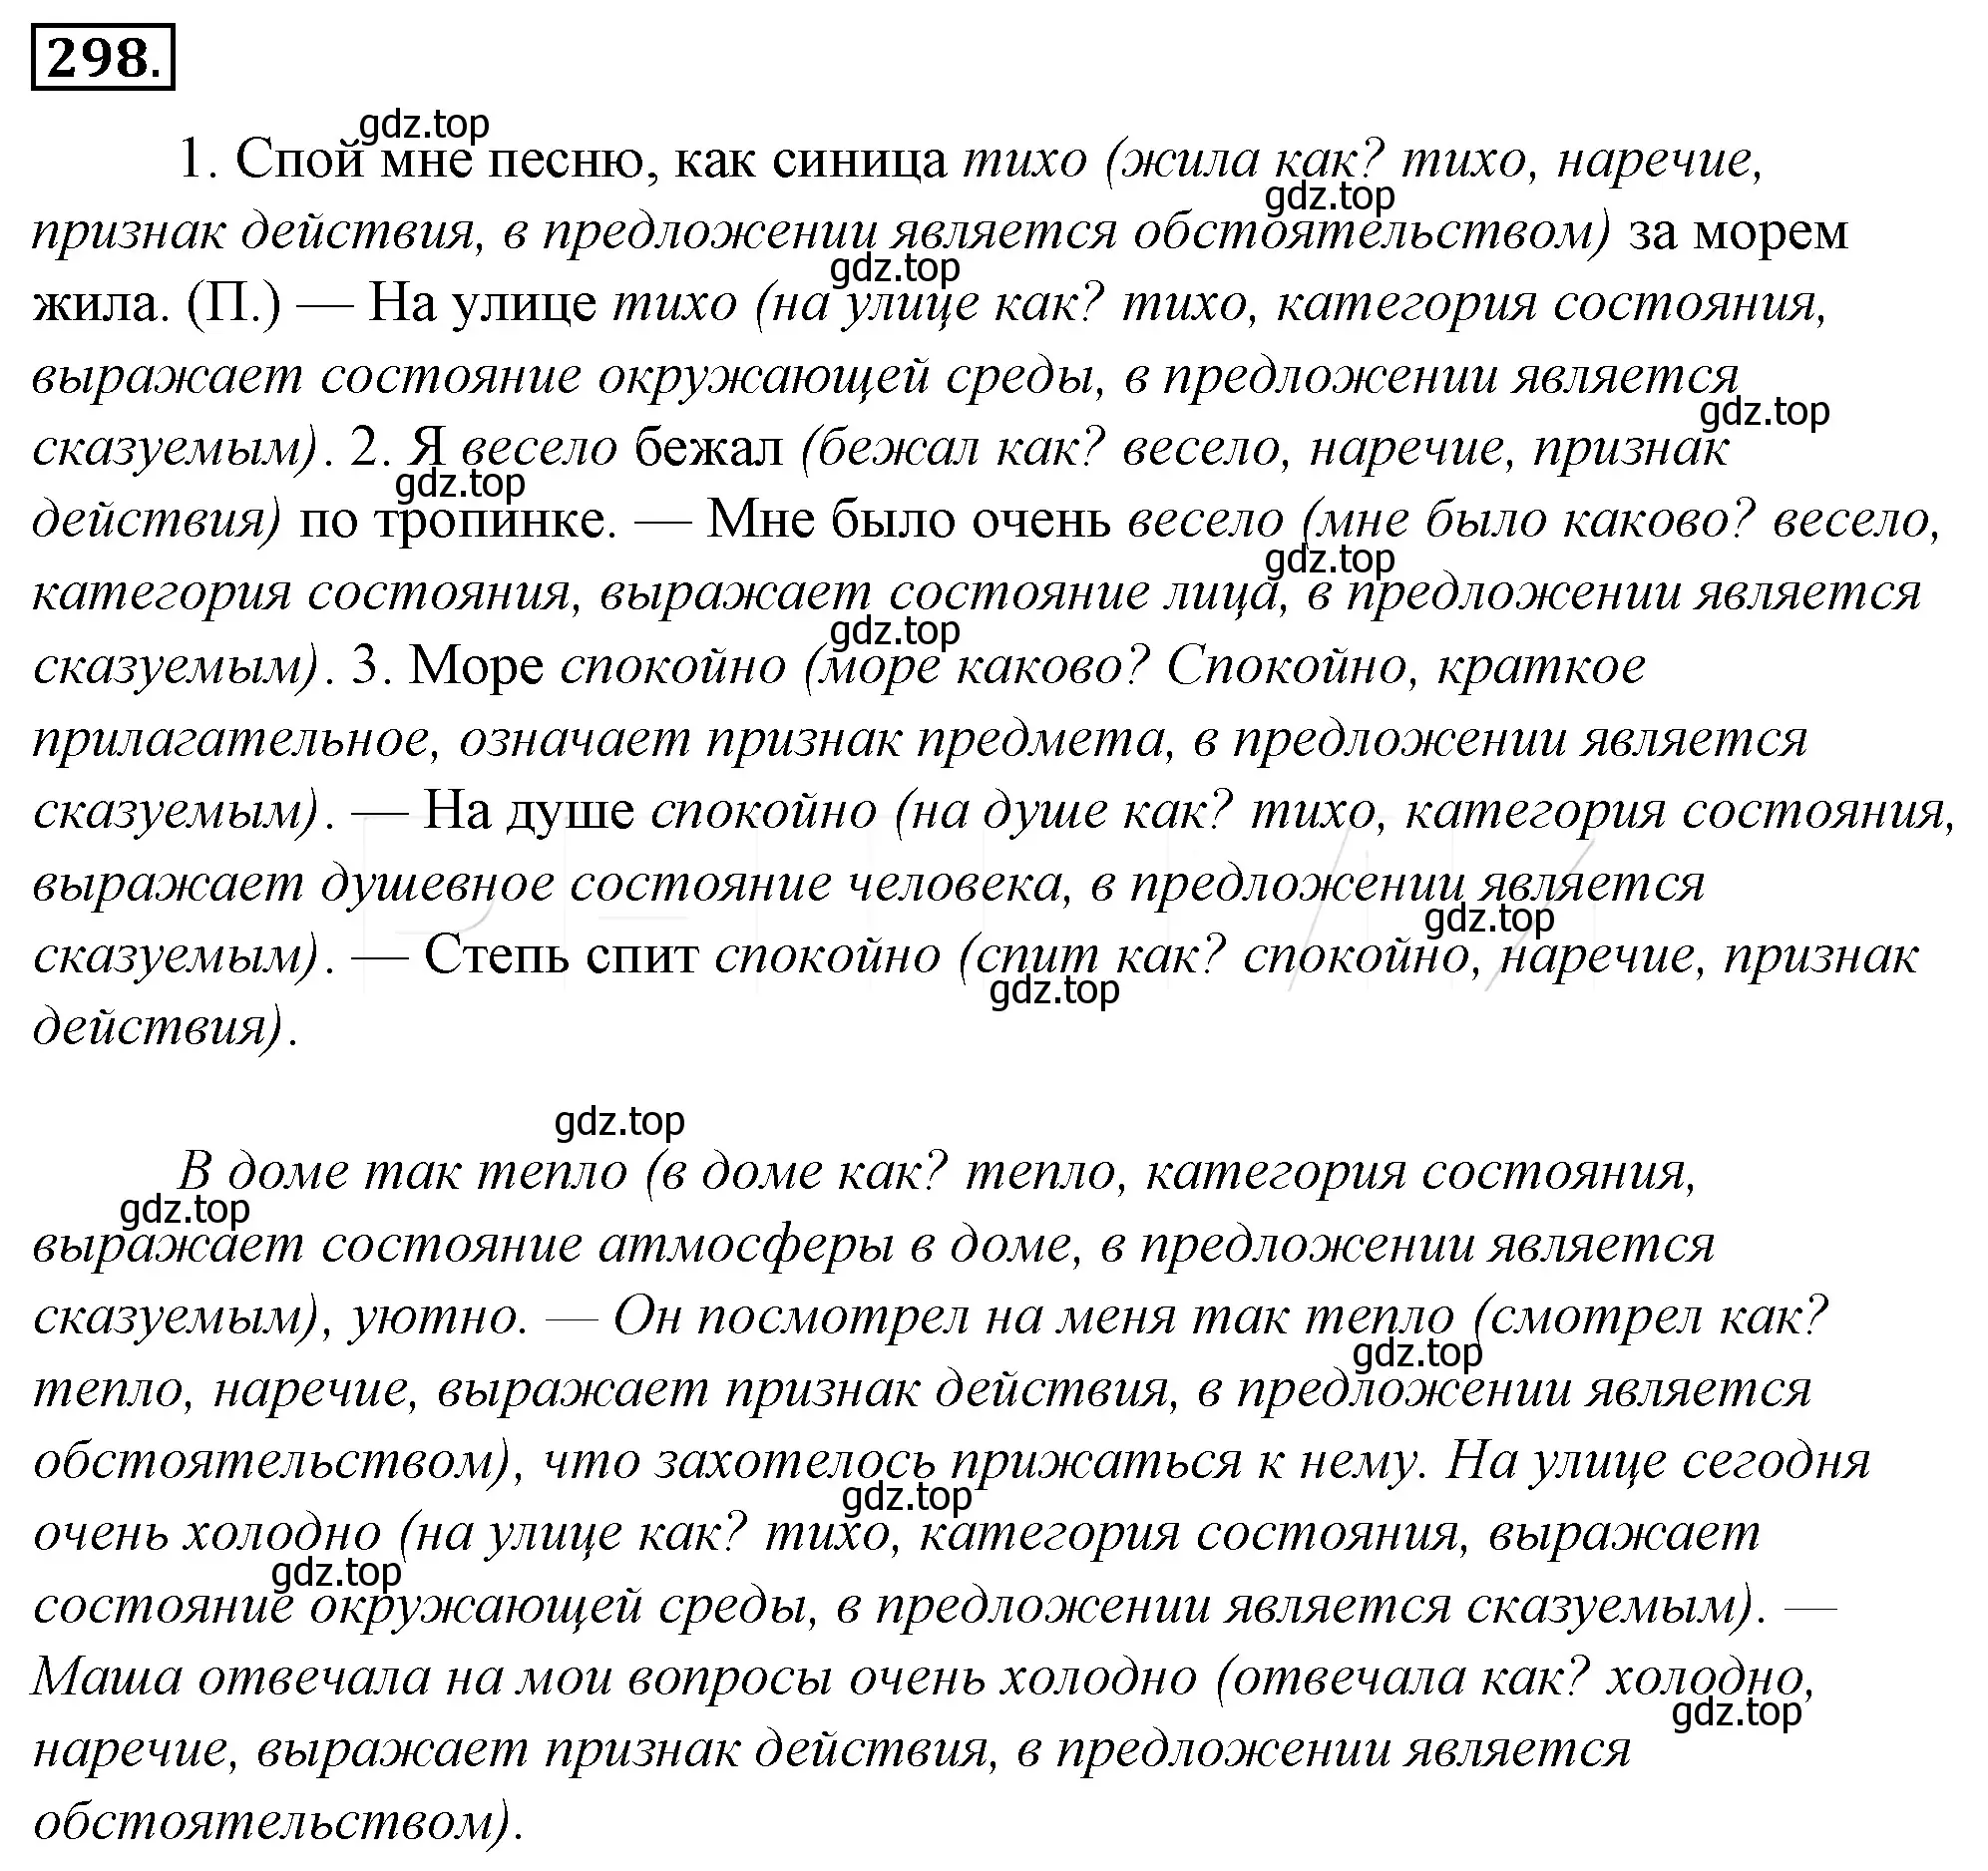 Решение 4. номер 322 (страница 300) гдз по русскому языку 10-11 класс Гольцова, Шамшин, учебник 1 часть